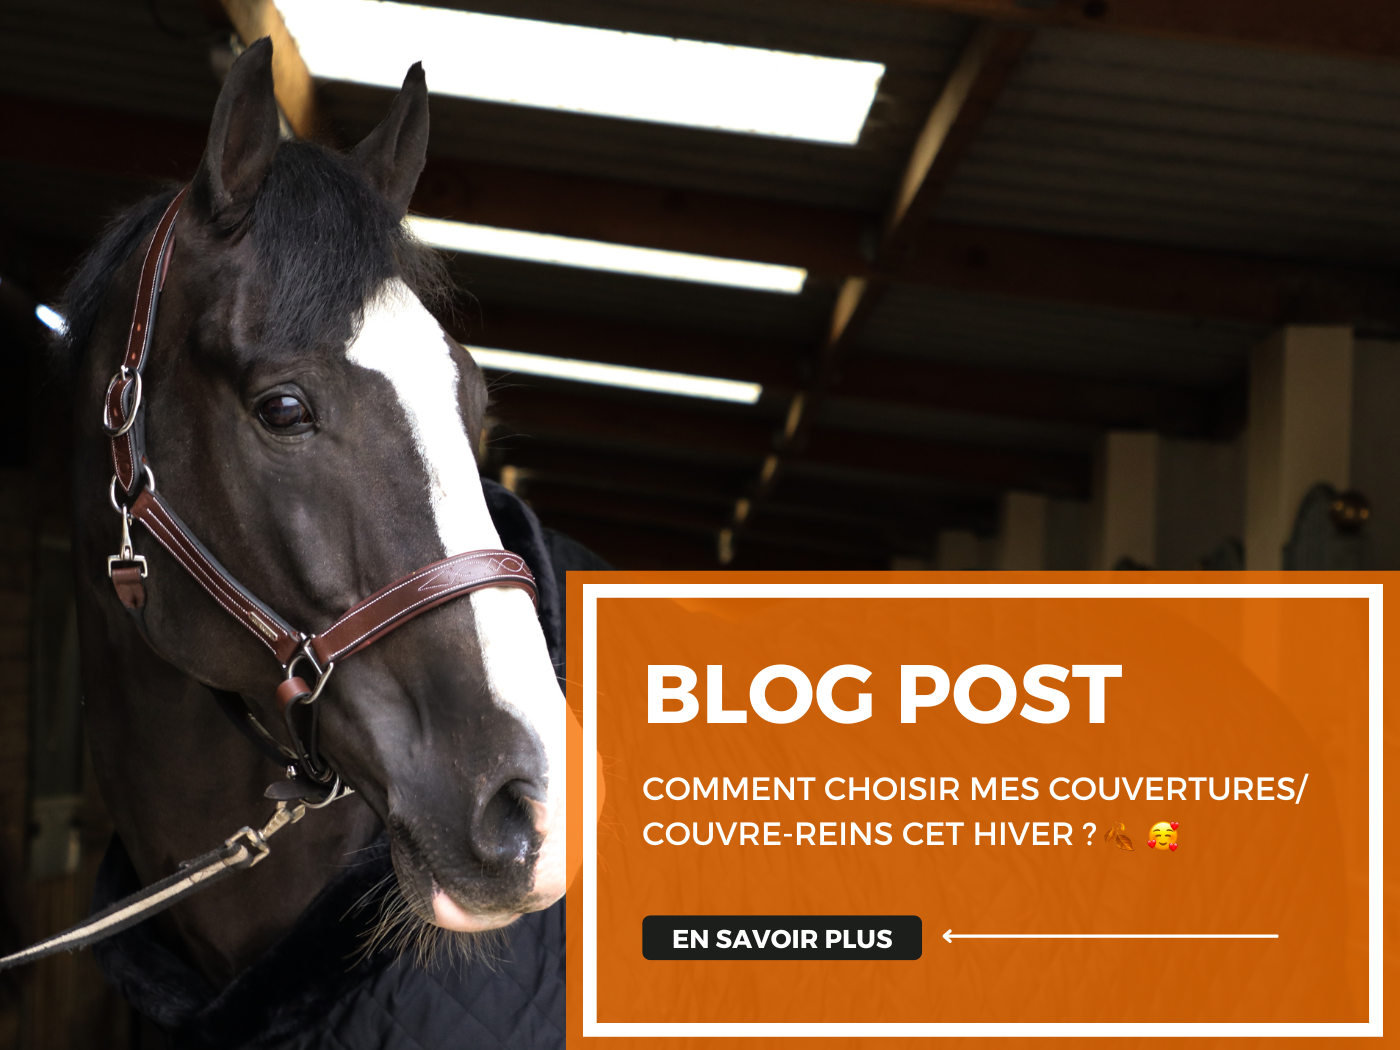 Quelle taille de couverture cheval choisir ? - Bijou Cheval